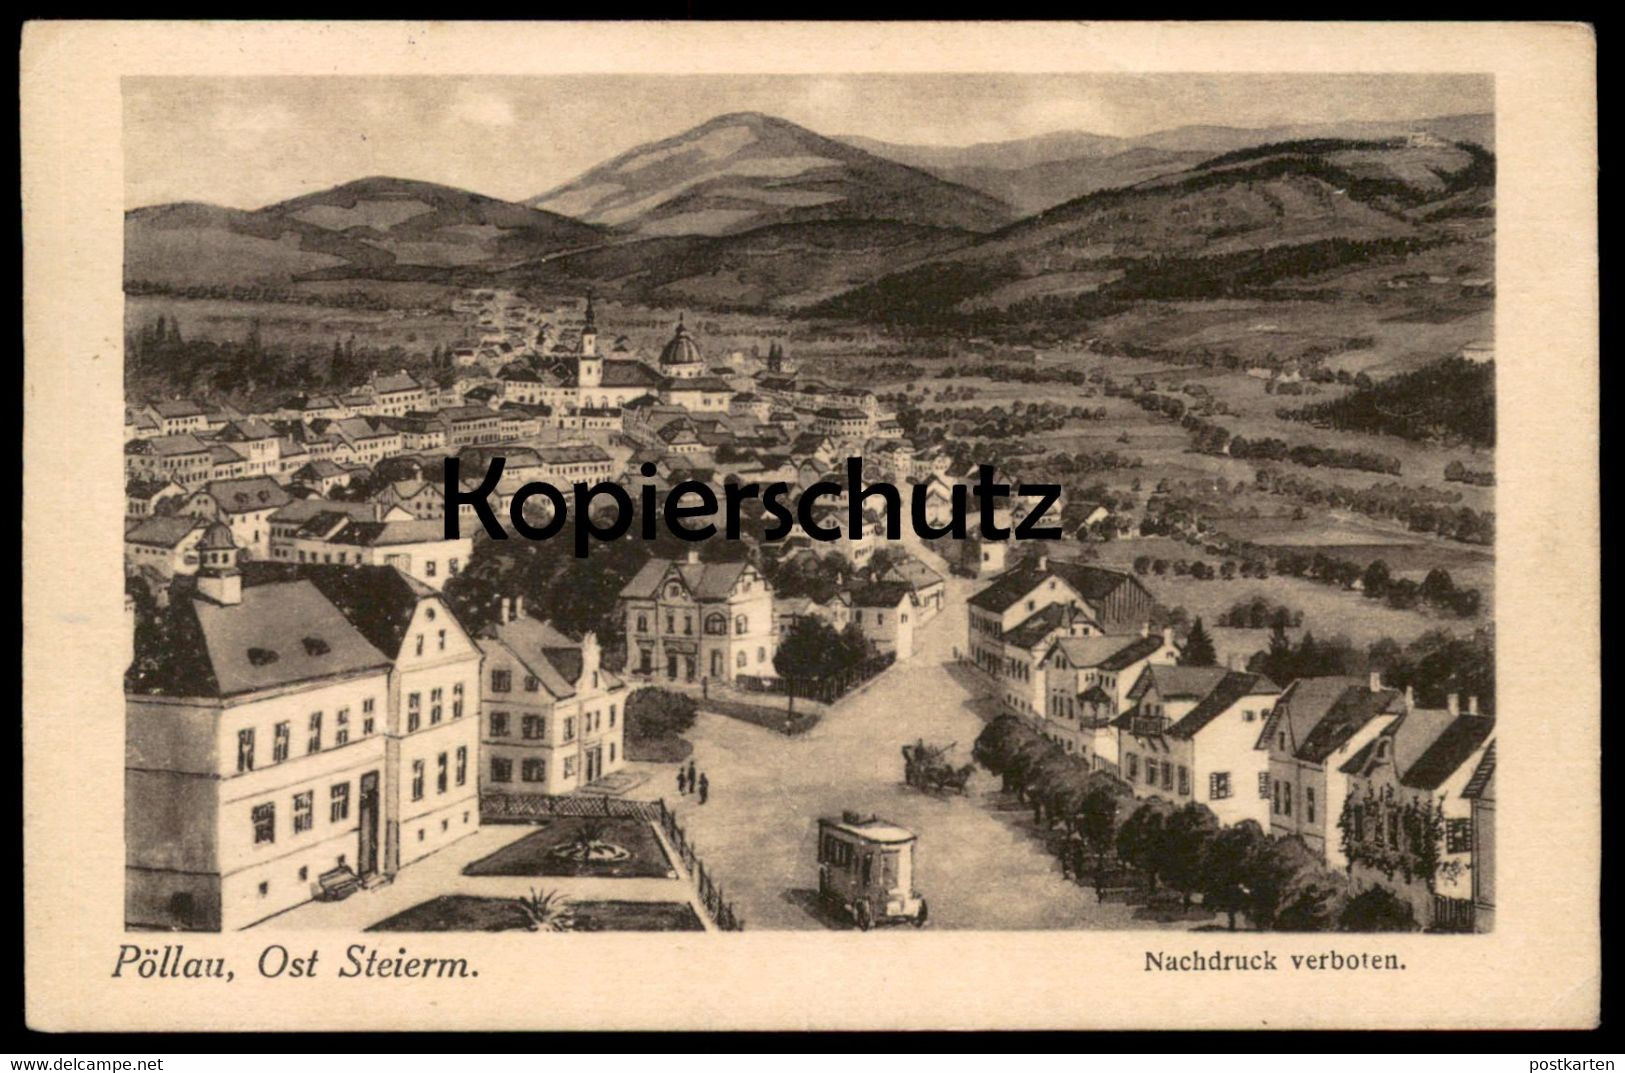 ALTE POSTKARTE PÖLLAU OST STEIERMARK Bus Kutsche Steiermark Radierung ? Etching Gravure Postcard Marke Posthorn 2 Kronen - Pöllau